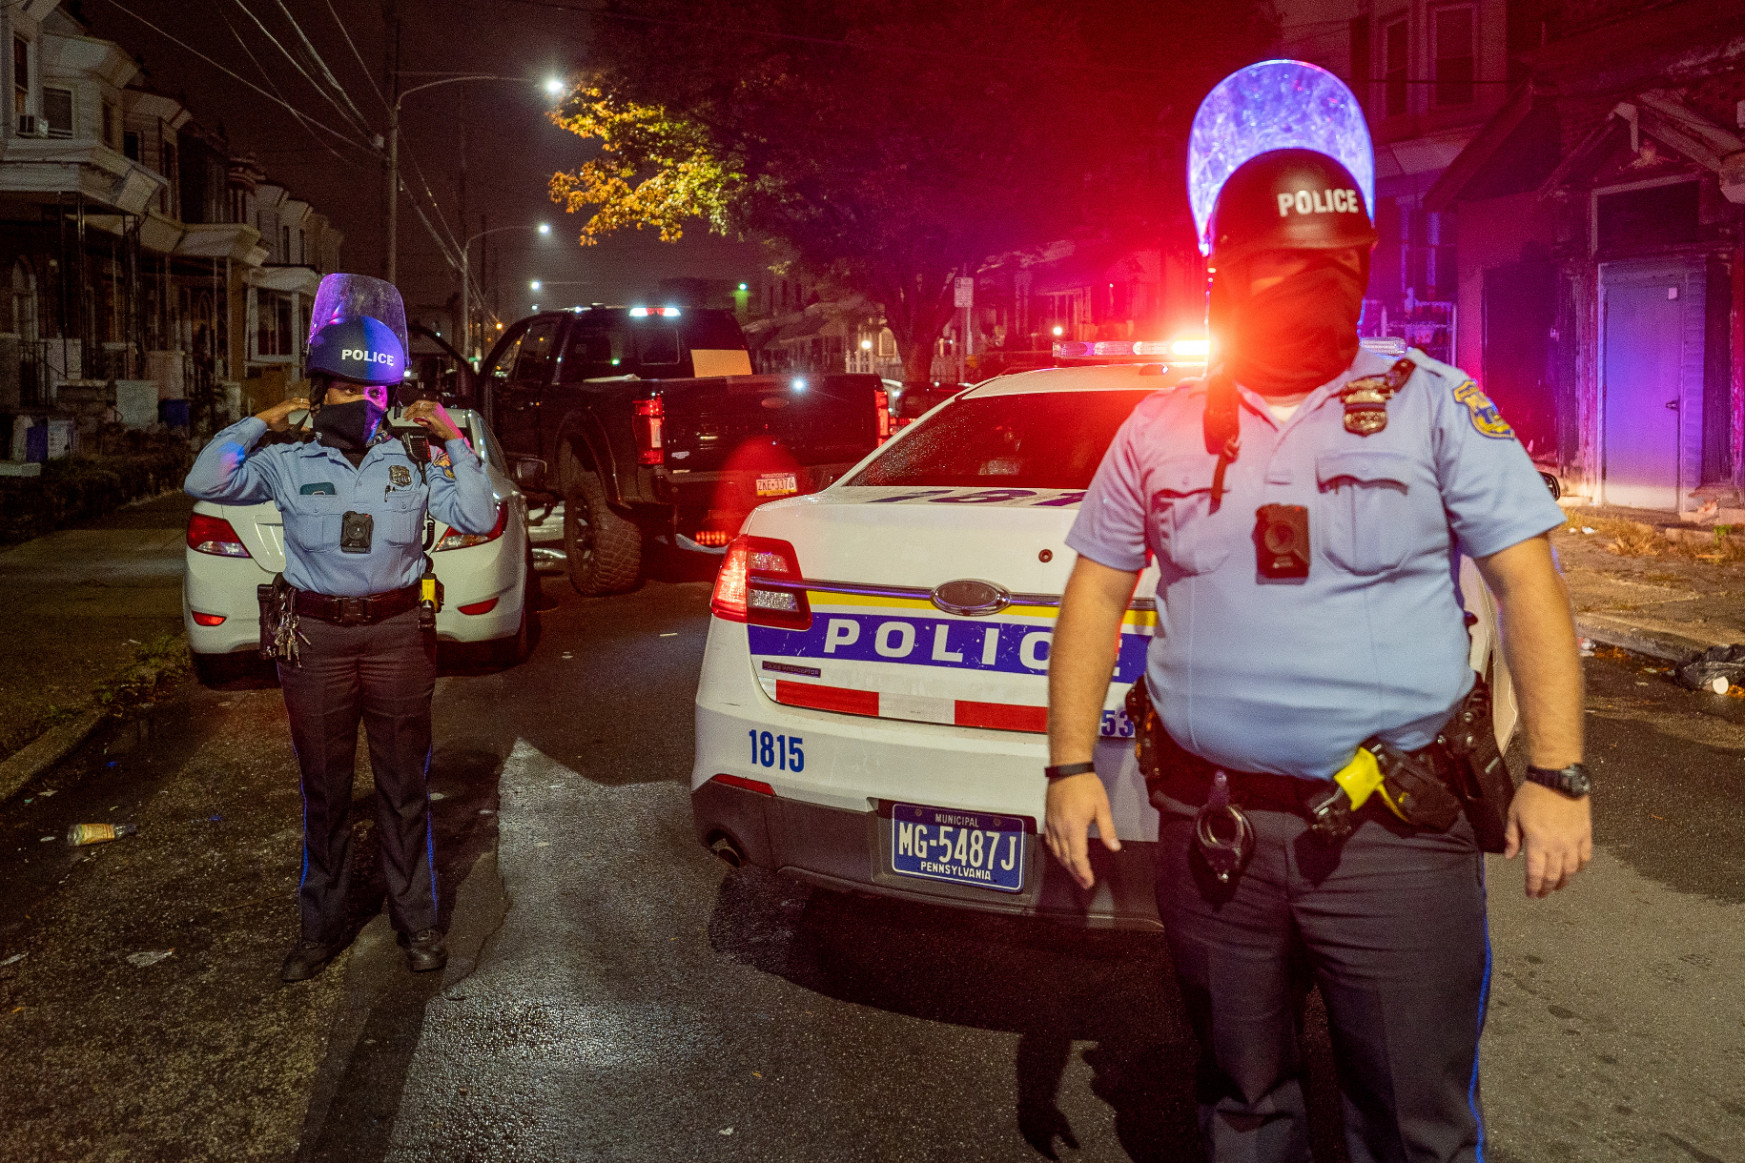 Lelőttek egy fekete férfit a rendőrök, zavargások törtek ki Philadelphiában